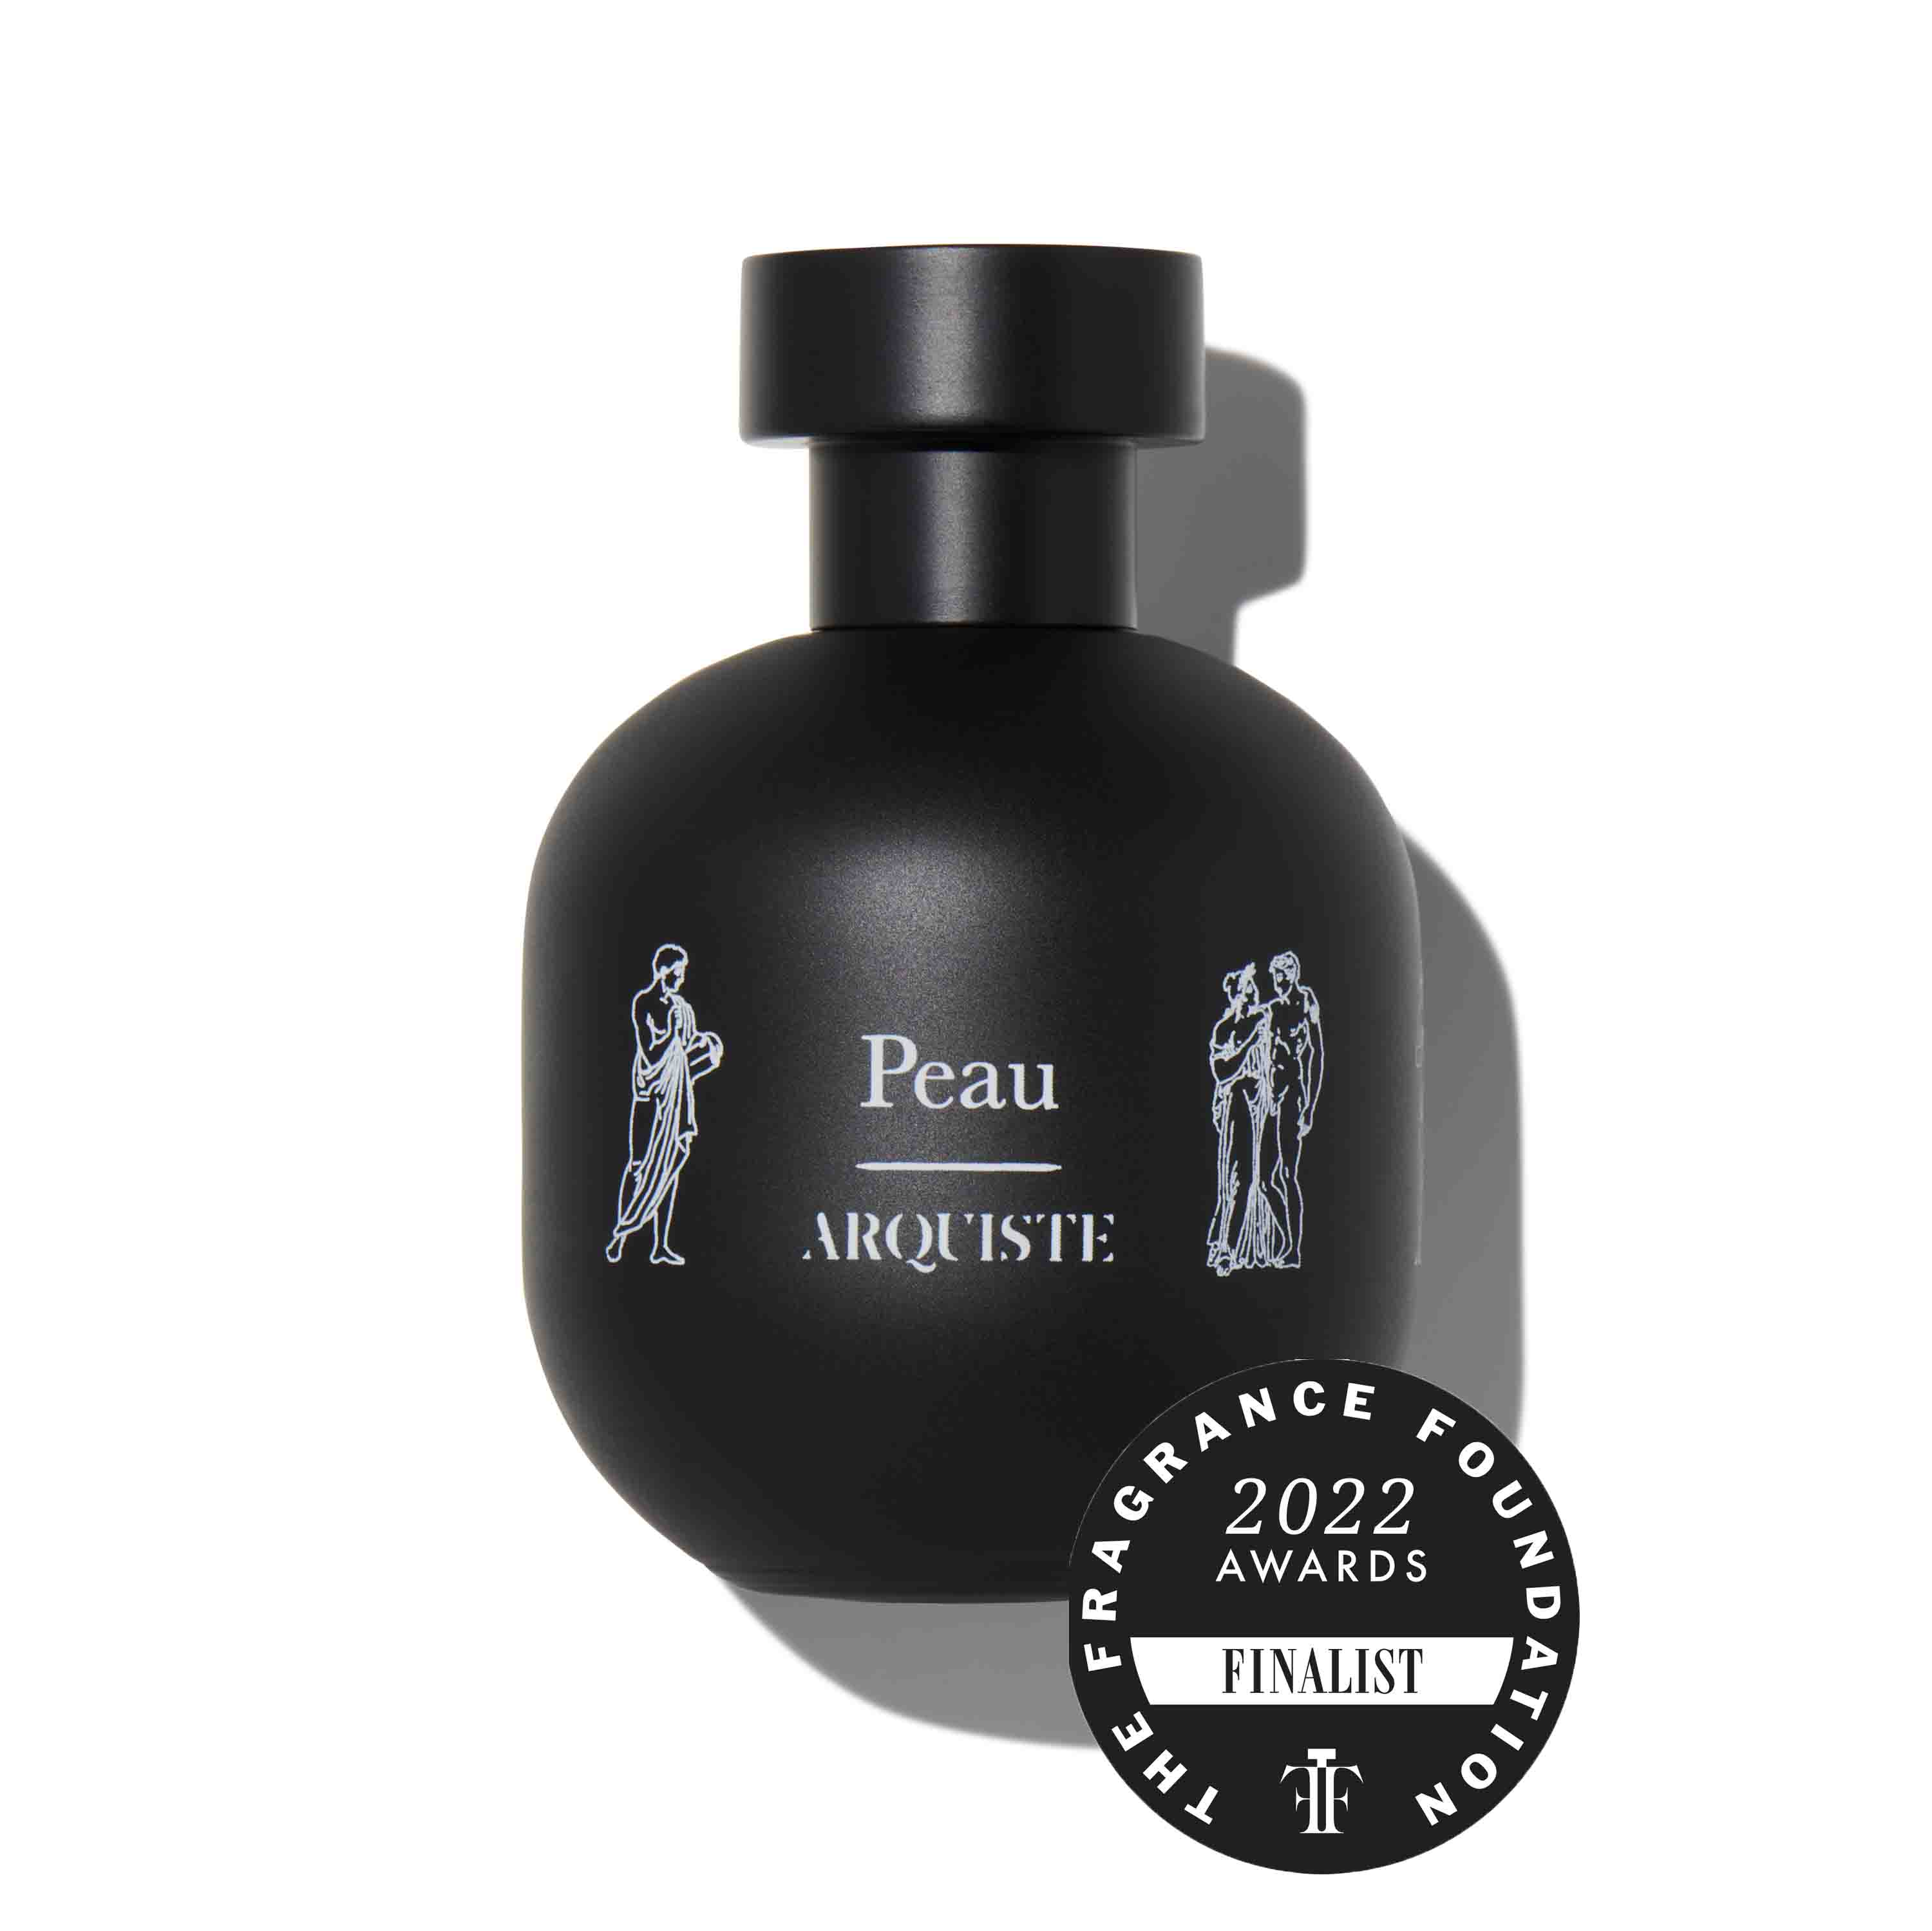 Peau by Arquiste, 100ml Eau de Parfum